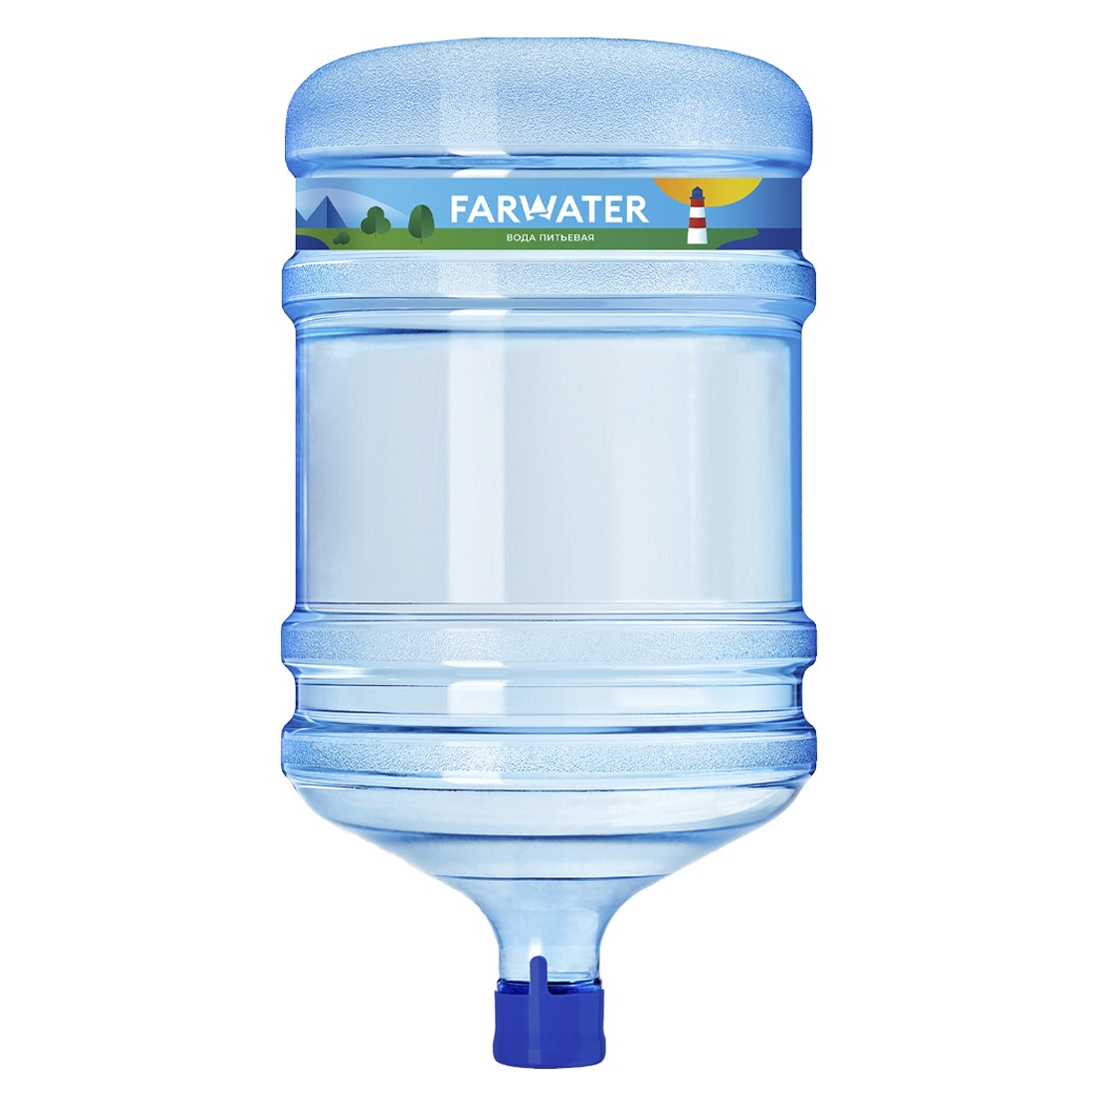 Вода для питья 19 литров. Farwater вода питьевая. Вода питьевая вода 19 л фарватер. Фарватер Люкс вода. Фарватер настоящая вода.